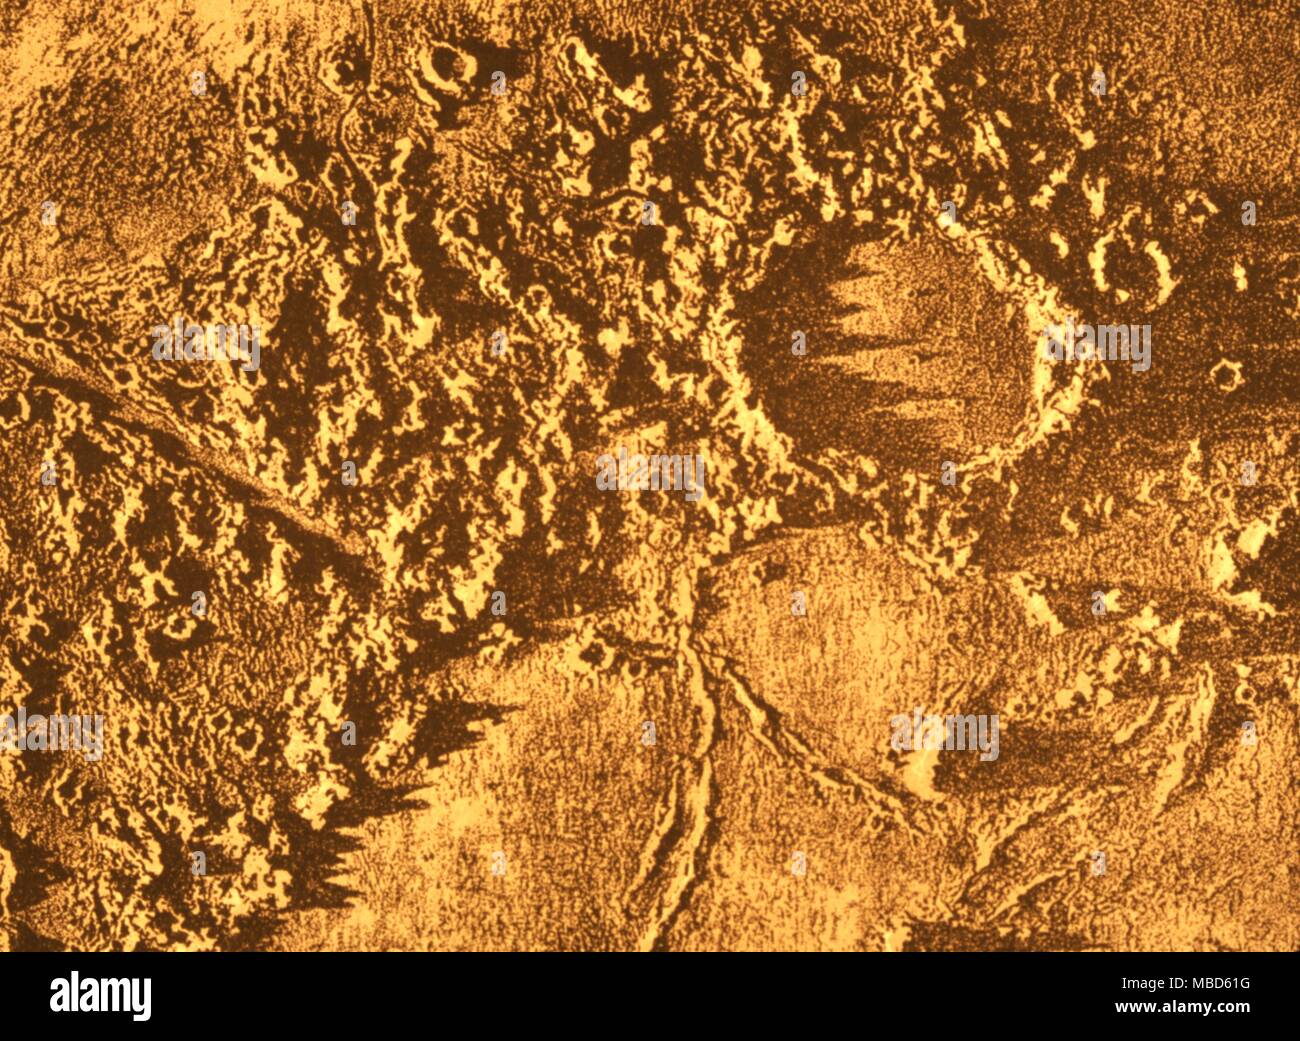 Oberfläche des Mondes - der Krater Pluto, nach einer Fotografie von nasmyth. Stockfoto